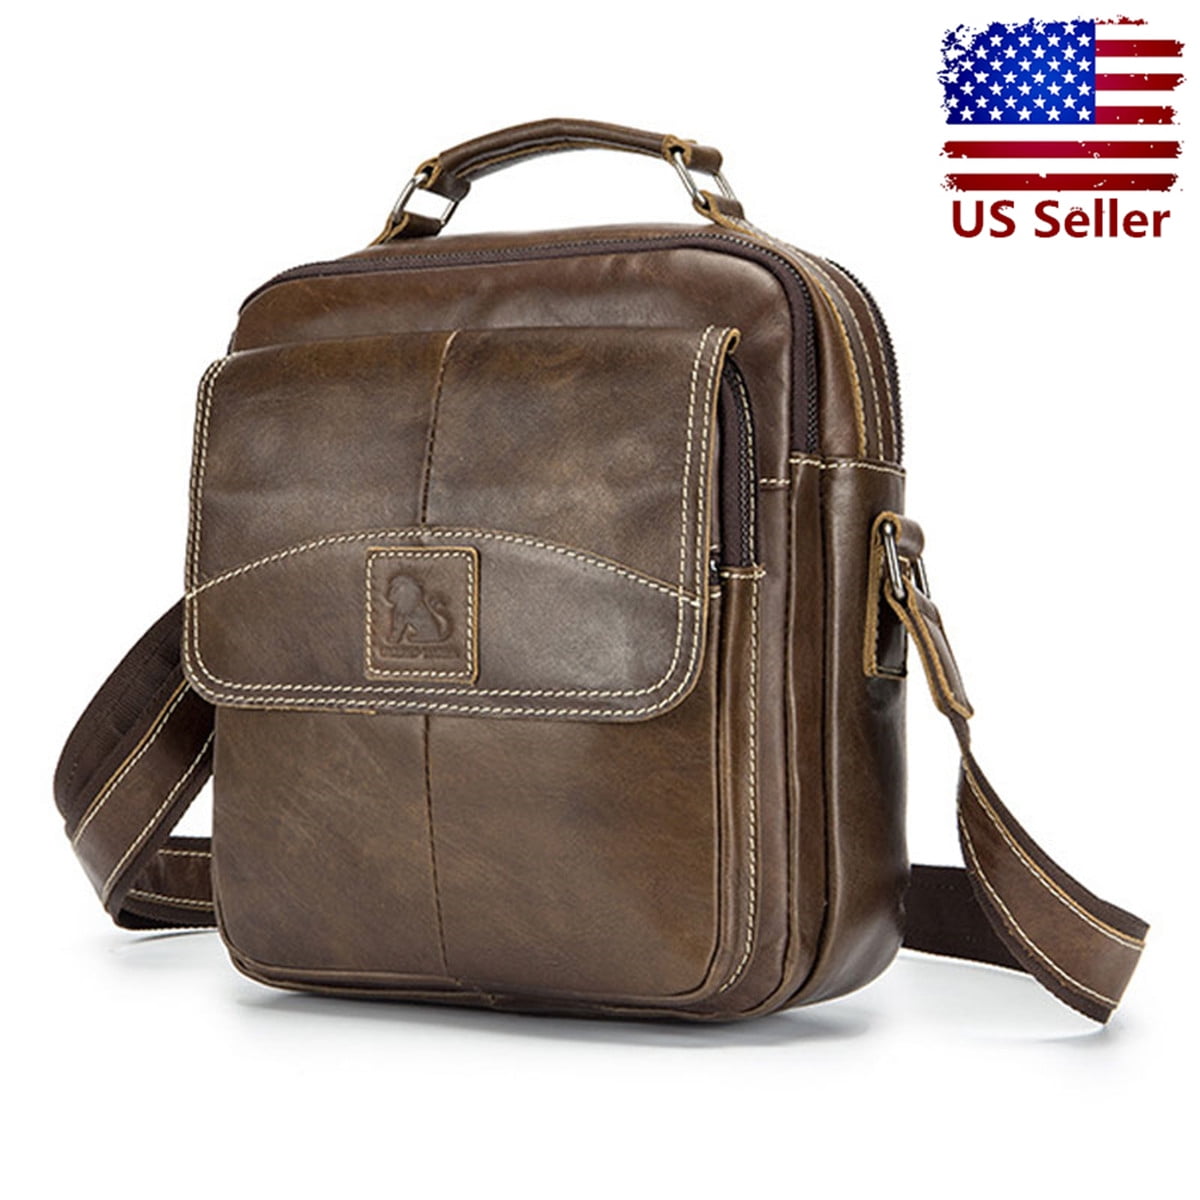 KUDOSALE - Genuine Leather Shoulder Bag Business Men Bag Messenger Bag for Men Crossbody Bag ...